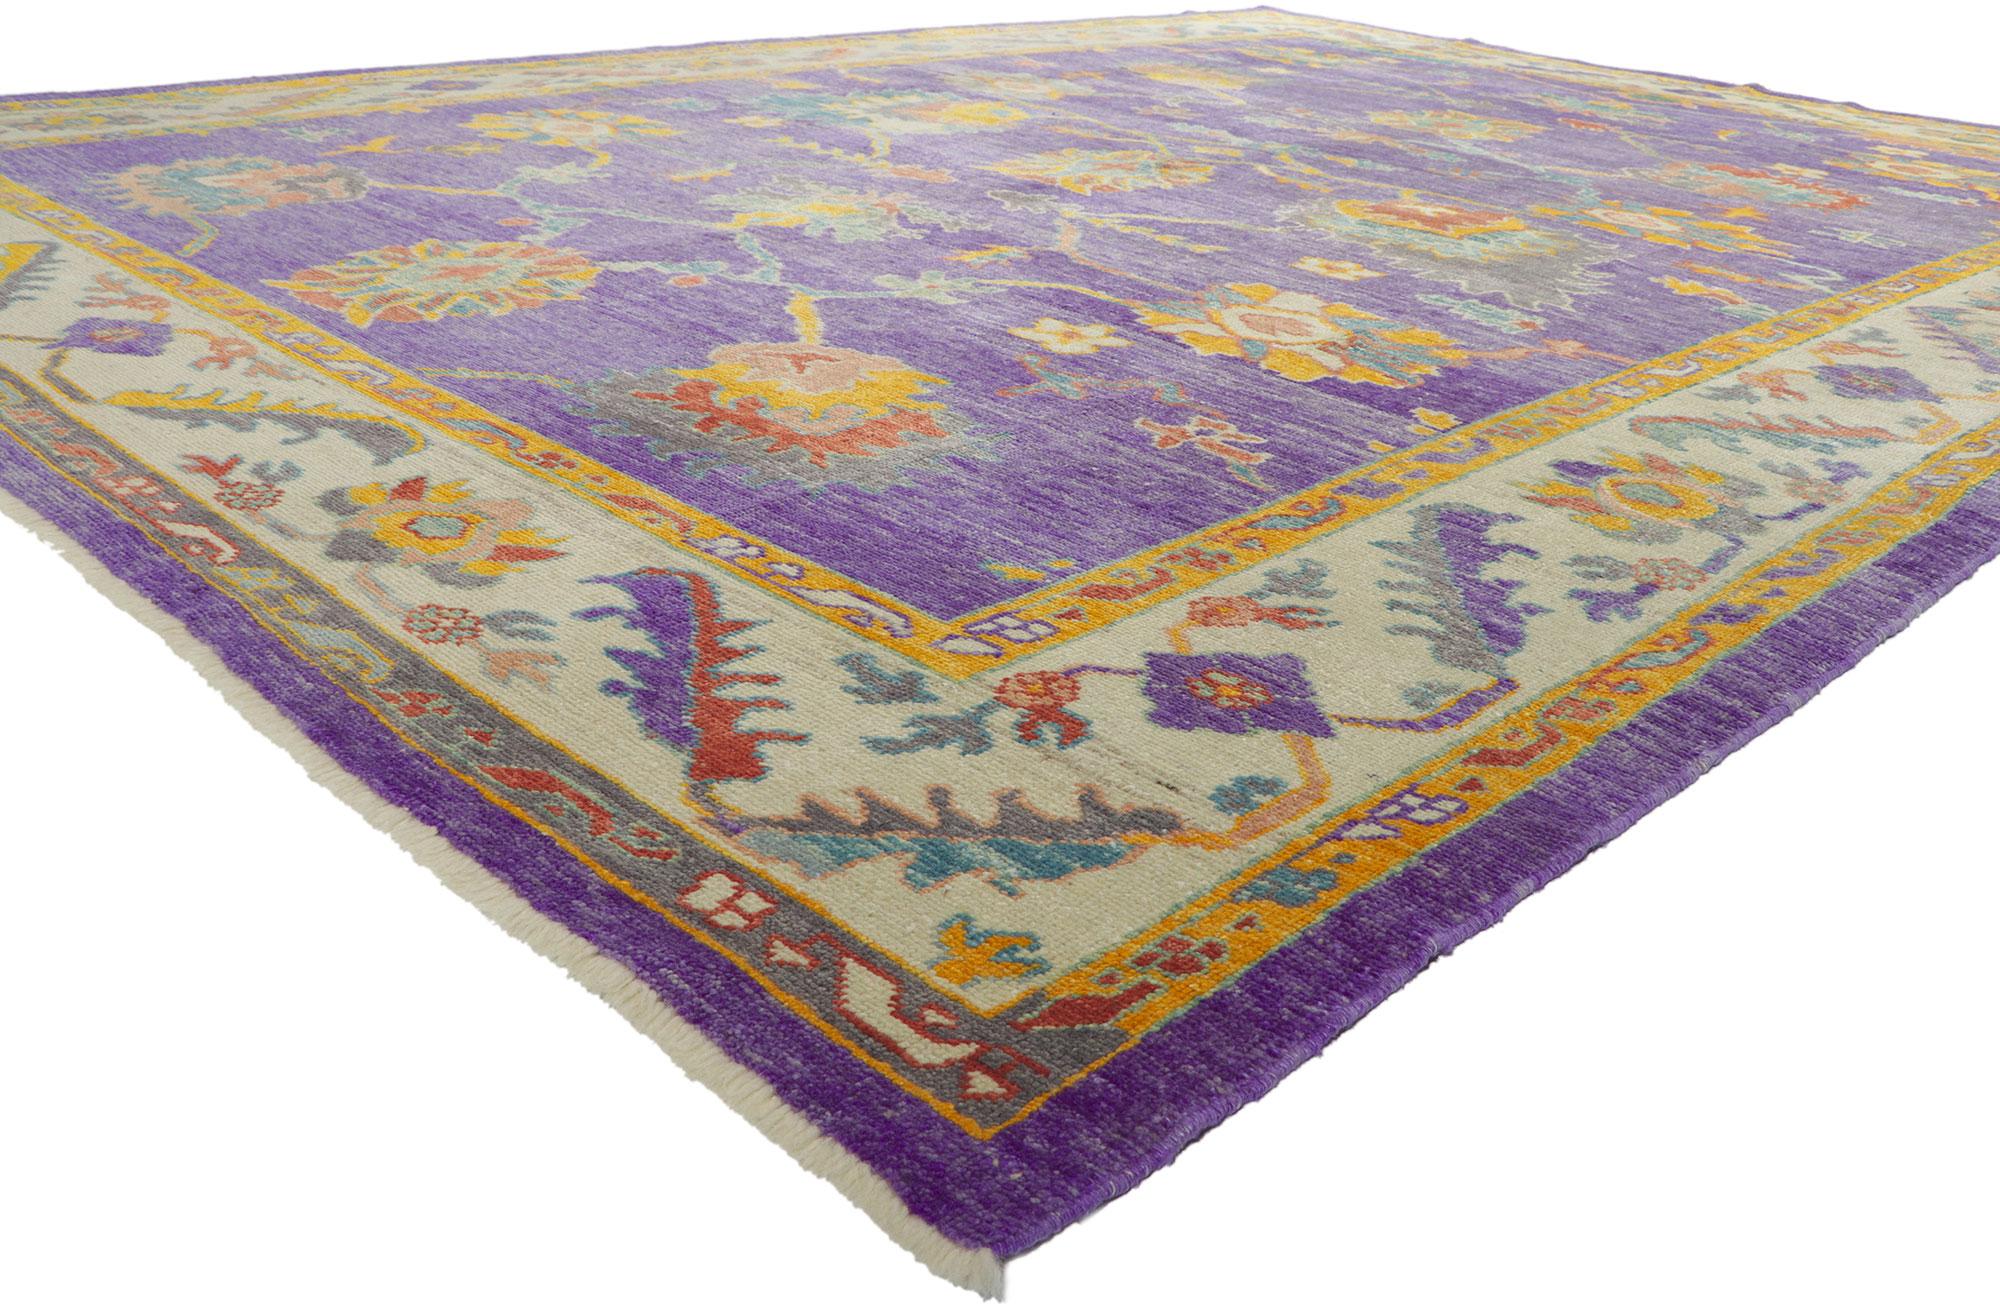 51887 Bunter Oushak Lila Türkischer Teppich, 10'04 x 14'04. Begeben Sie sich auf eine faszinierende Reise mit unserem handgeknüpften Meisterwerk aus Wolle - einem farbenfrohen türkischen Oushak-Teppich, der über das Gewöhnliche hinausgeht und den